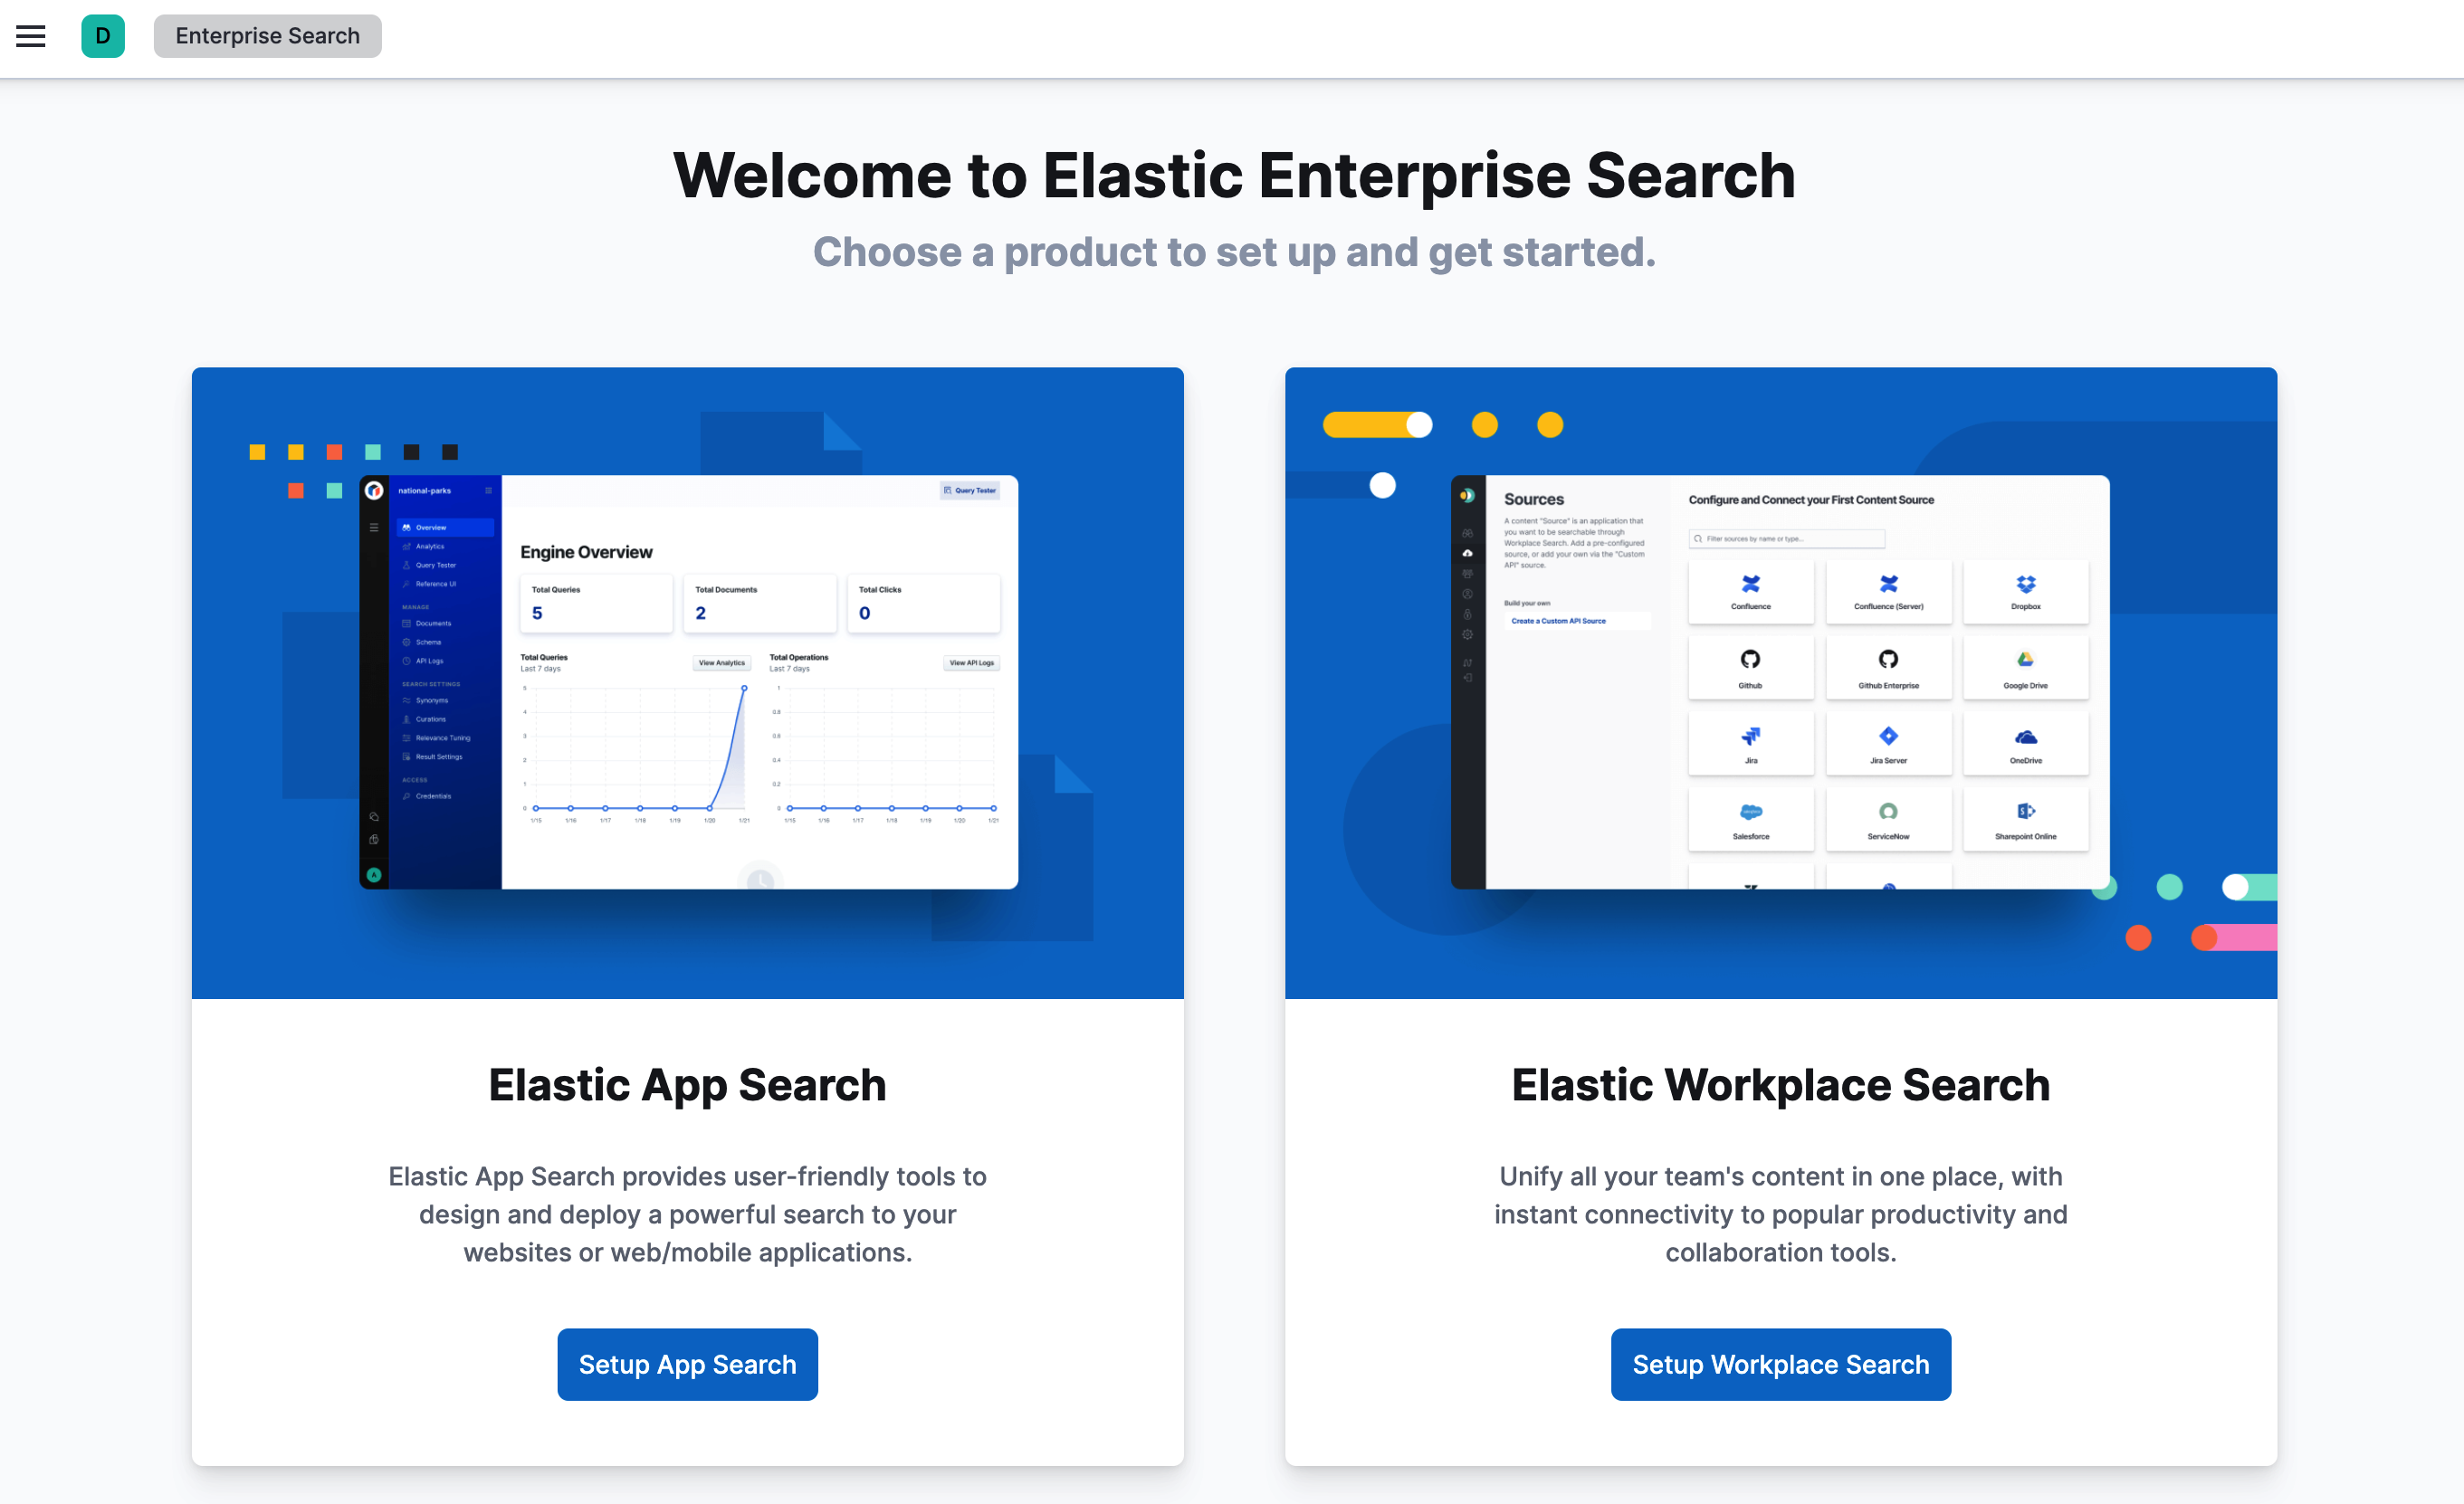 Enterprise Search home page